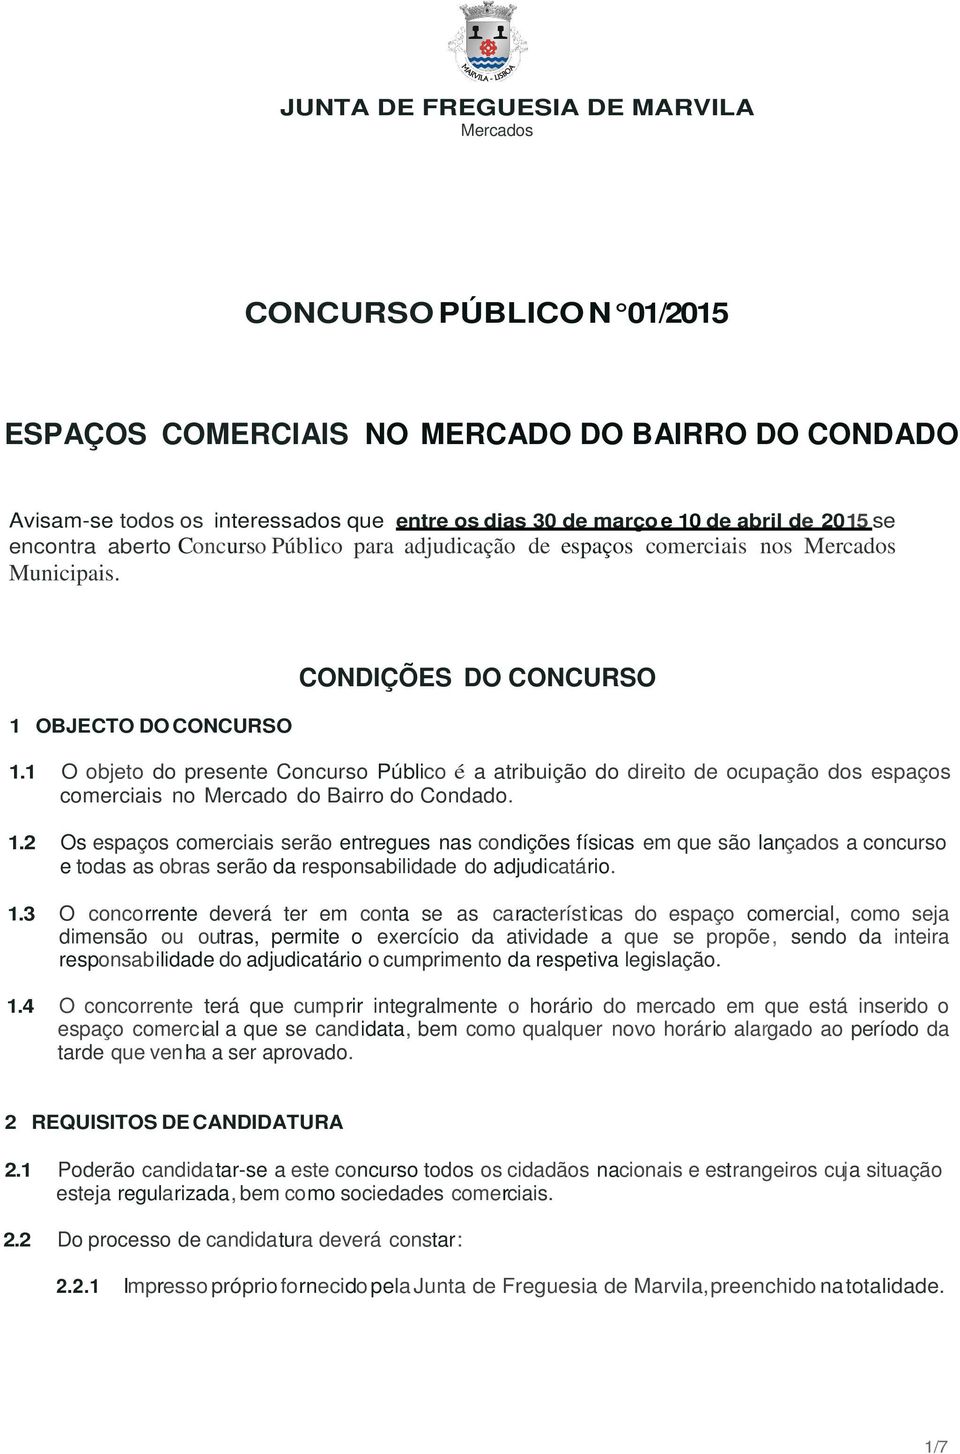 O objeto do presente Concurso Público é a atribuição do direito de ocupação dos espaços comerciais no Mercado do Bairro do Condado.